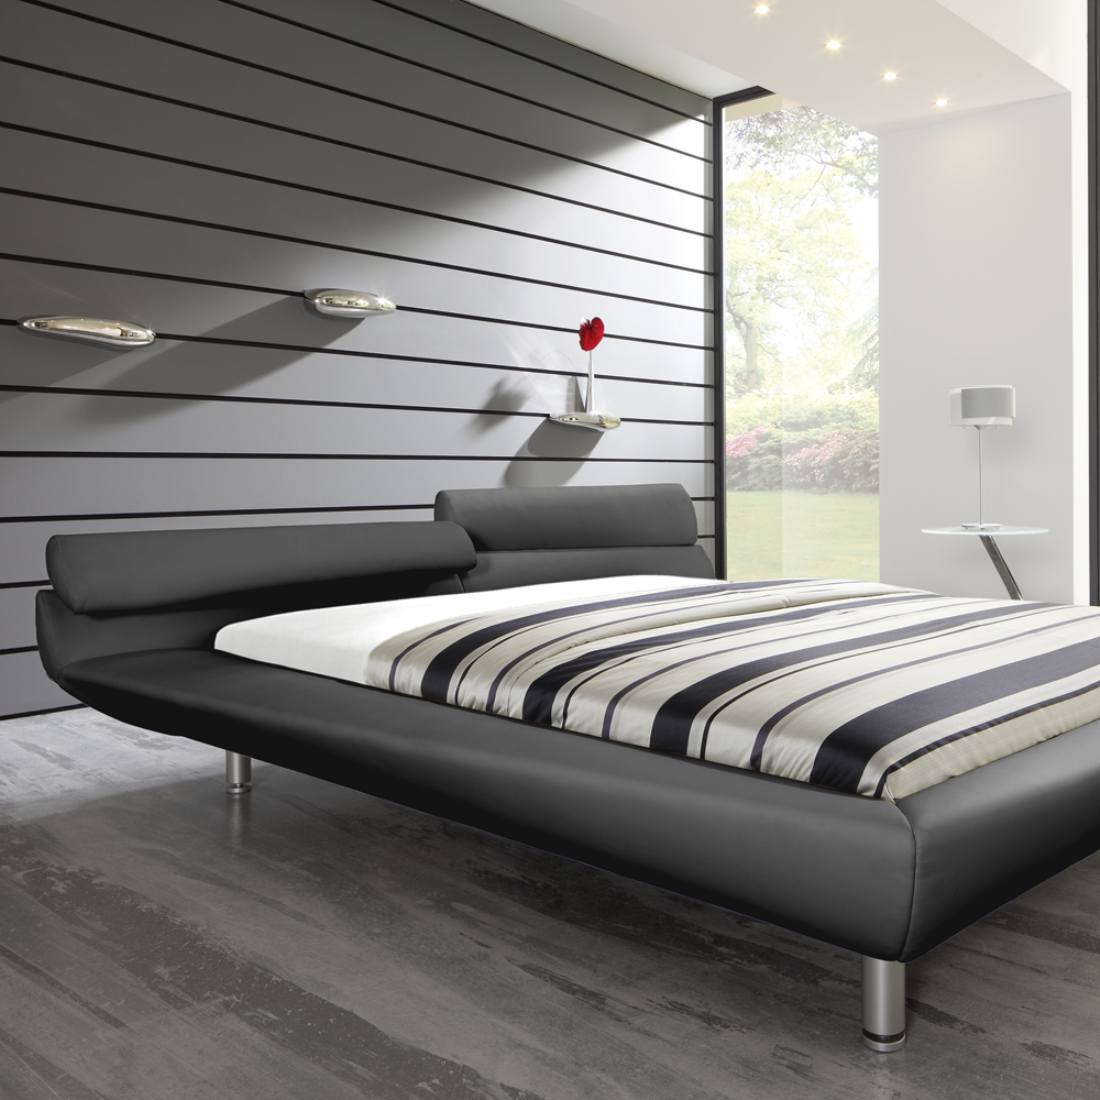 asymmetrisch, futuristisches Polsterbett #wandgestaltung #grauespolsterbett #futuristisch ©RUF|Betten